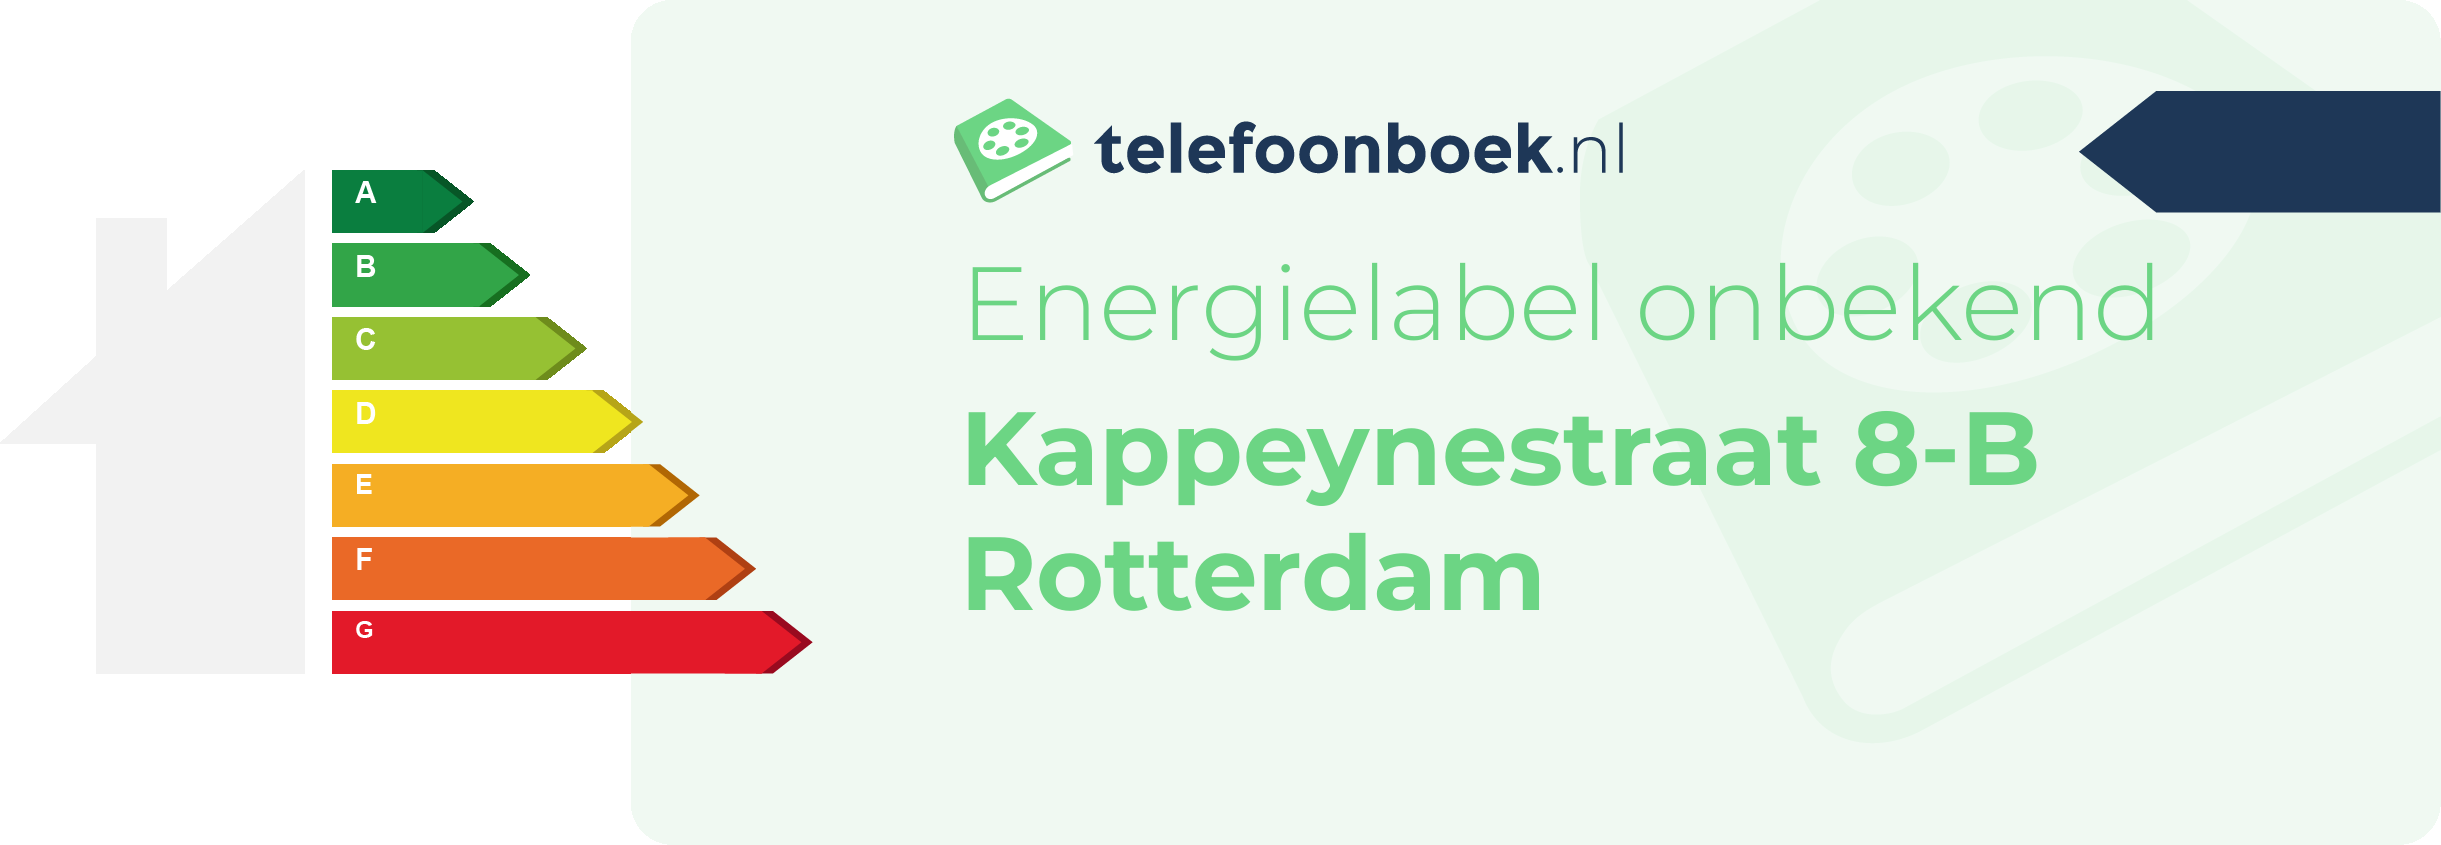 Energielabel Kappeynestraat 8-B Rotterdam